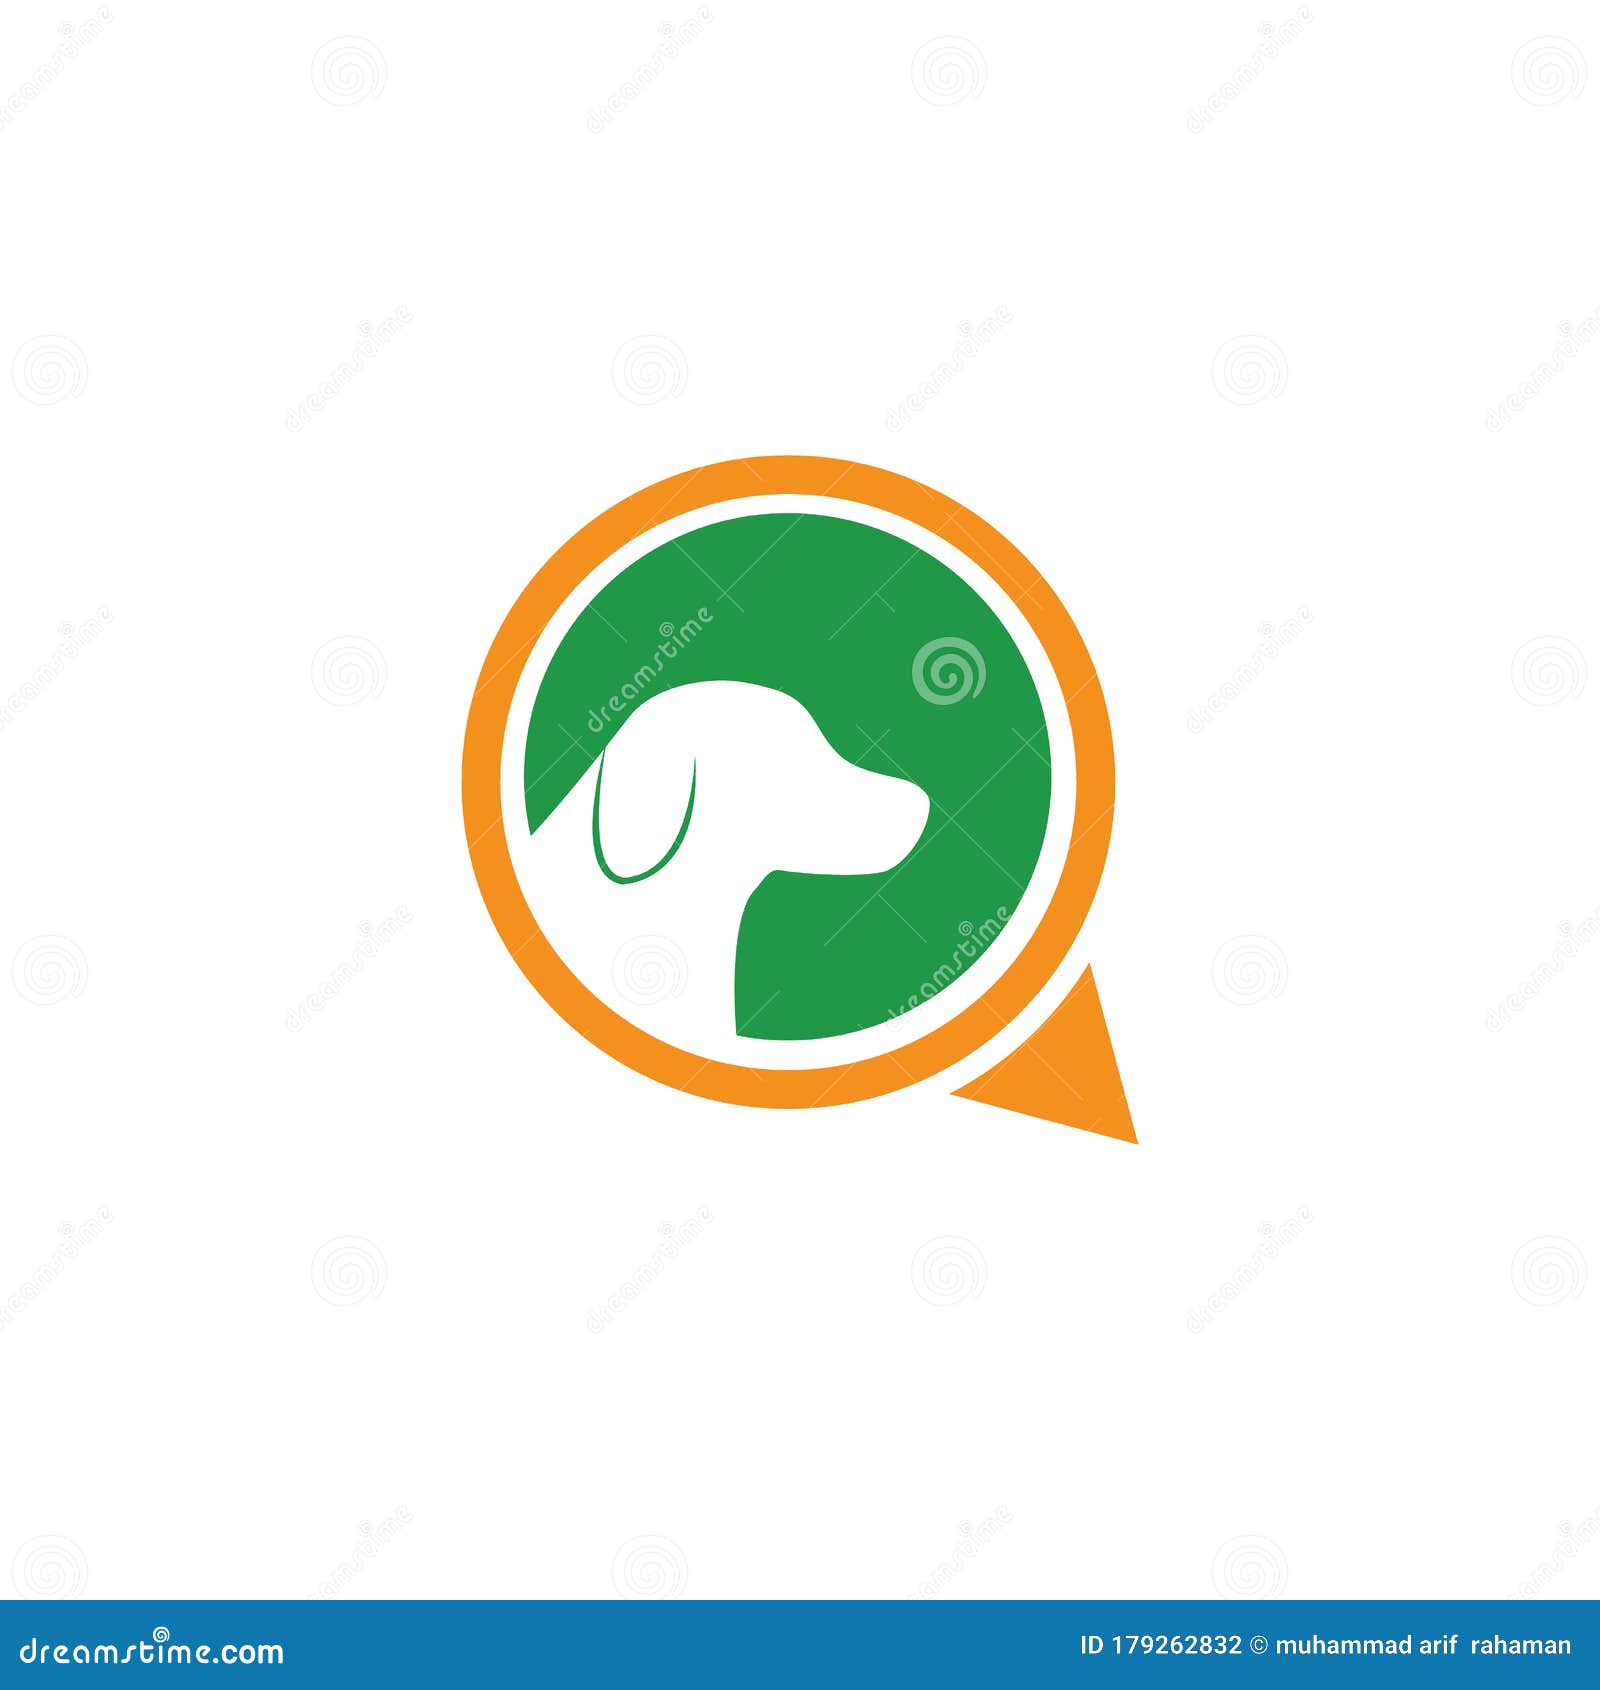 Searching Dog Logo Design Vector Template Icon Vector Illustration Stock  Vector - Illustration of idea, application: 179262832